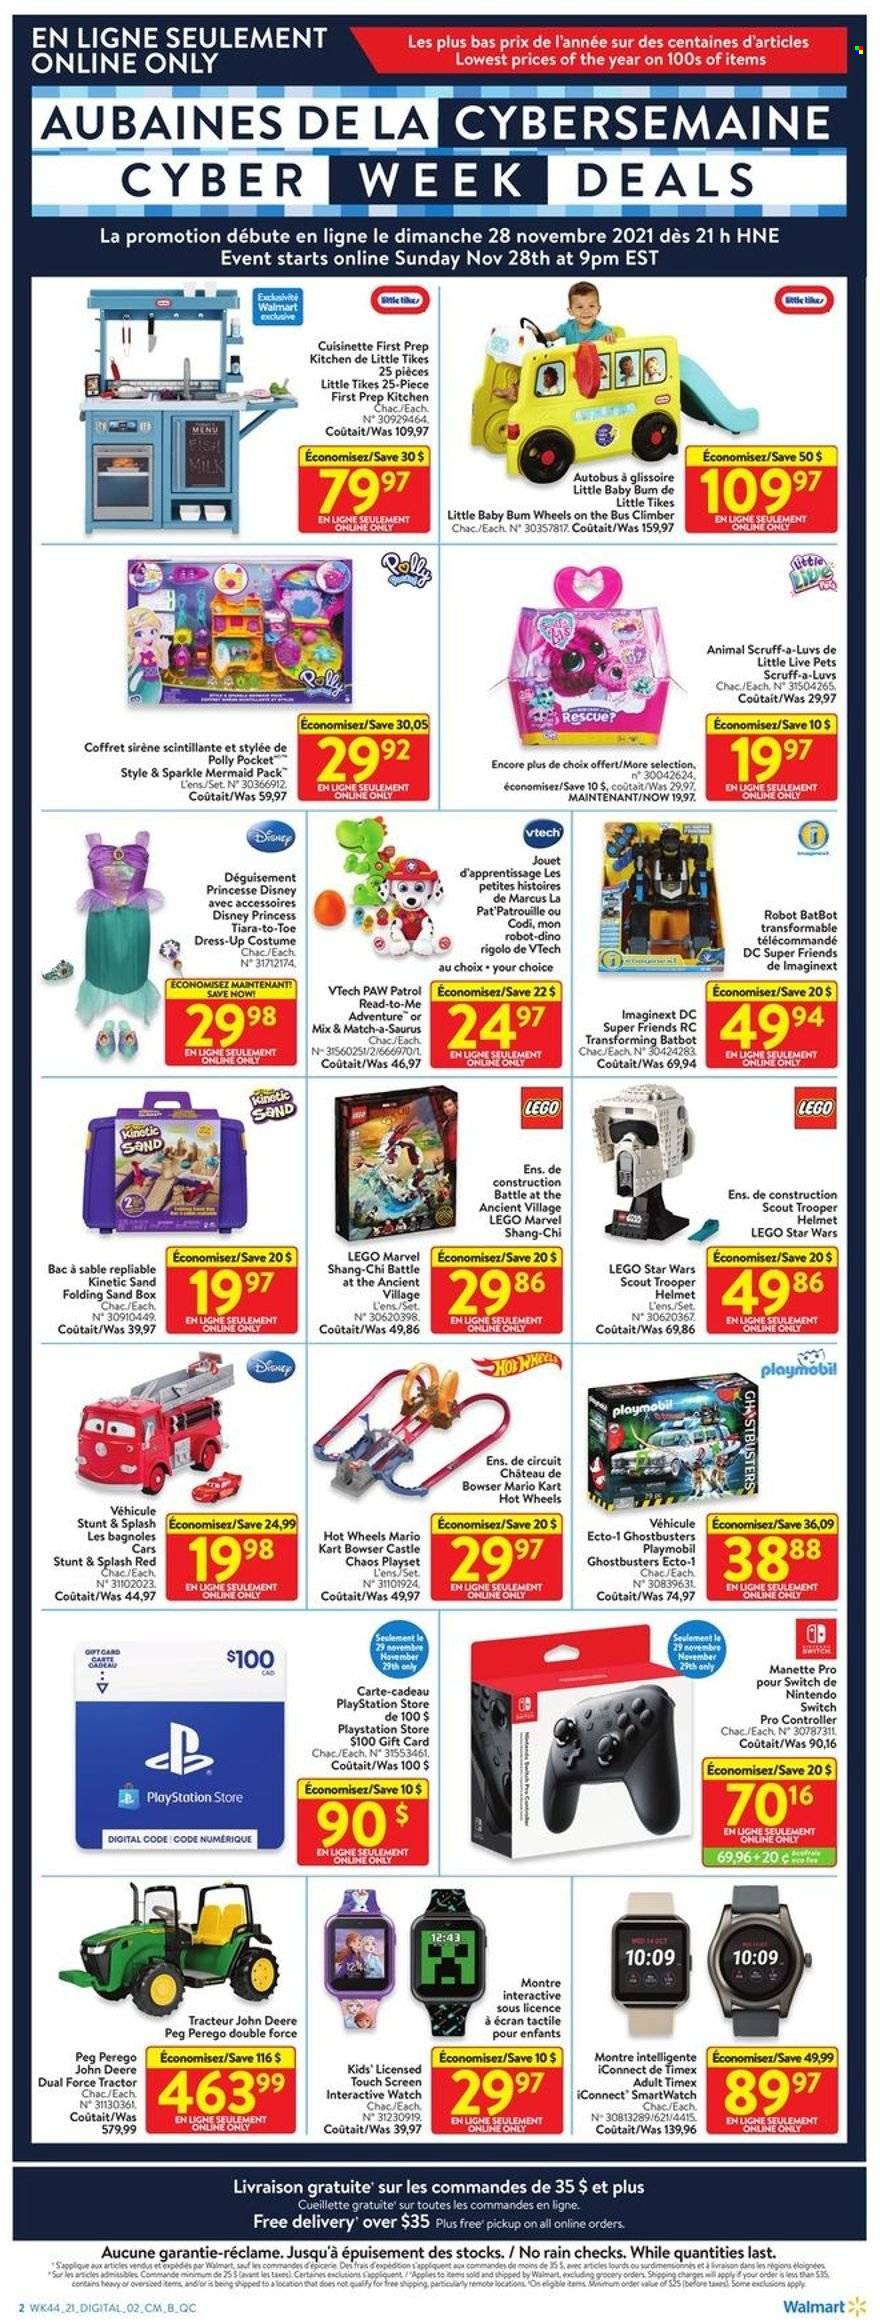 thumbnail - Circulaire Walmart - 28 Novembre 2021 - 01 Décembre 2021 - Produits soldés - Disney, costume, coffret, Playmobil, Lego, Lego Star Wars, Cars, montre, kart, Hot Wheels, smartwatch, Nintendo Switch, Playstation. Page 2.